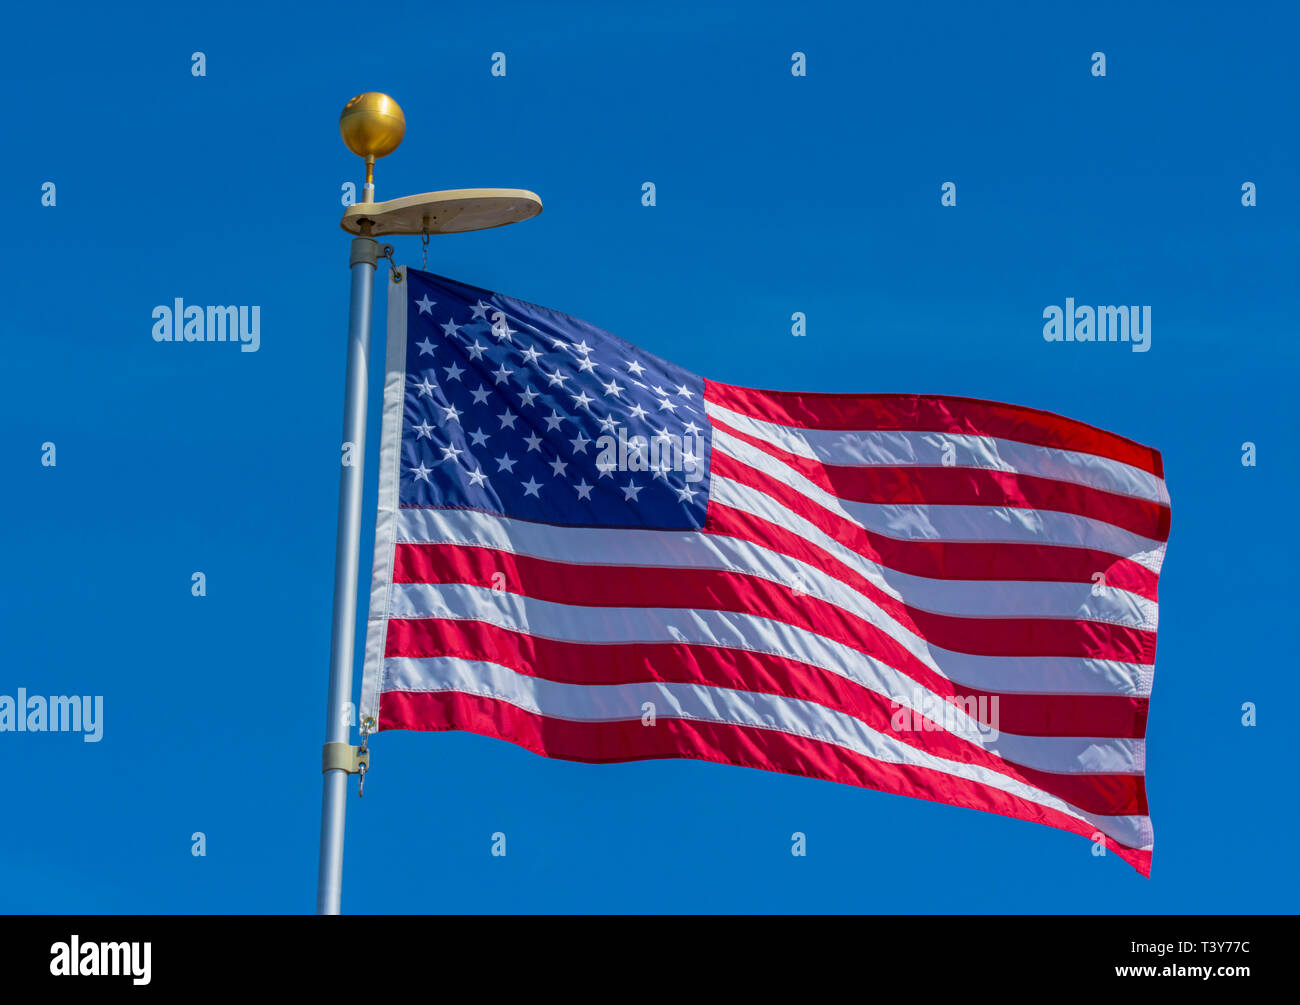 Amerikanische Flagge weht im Wind mit blauer Himmel, Castle Rock Colorado USA. Foto im April getroffen. Stockfoto